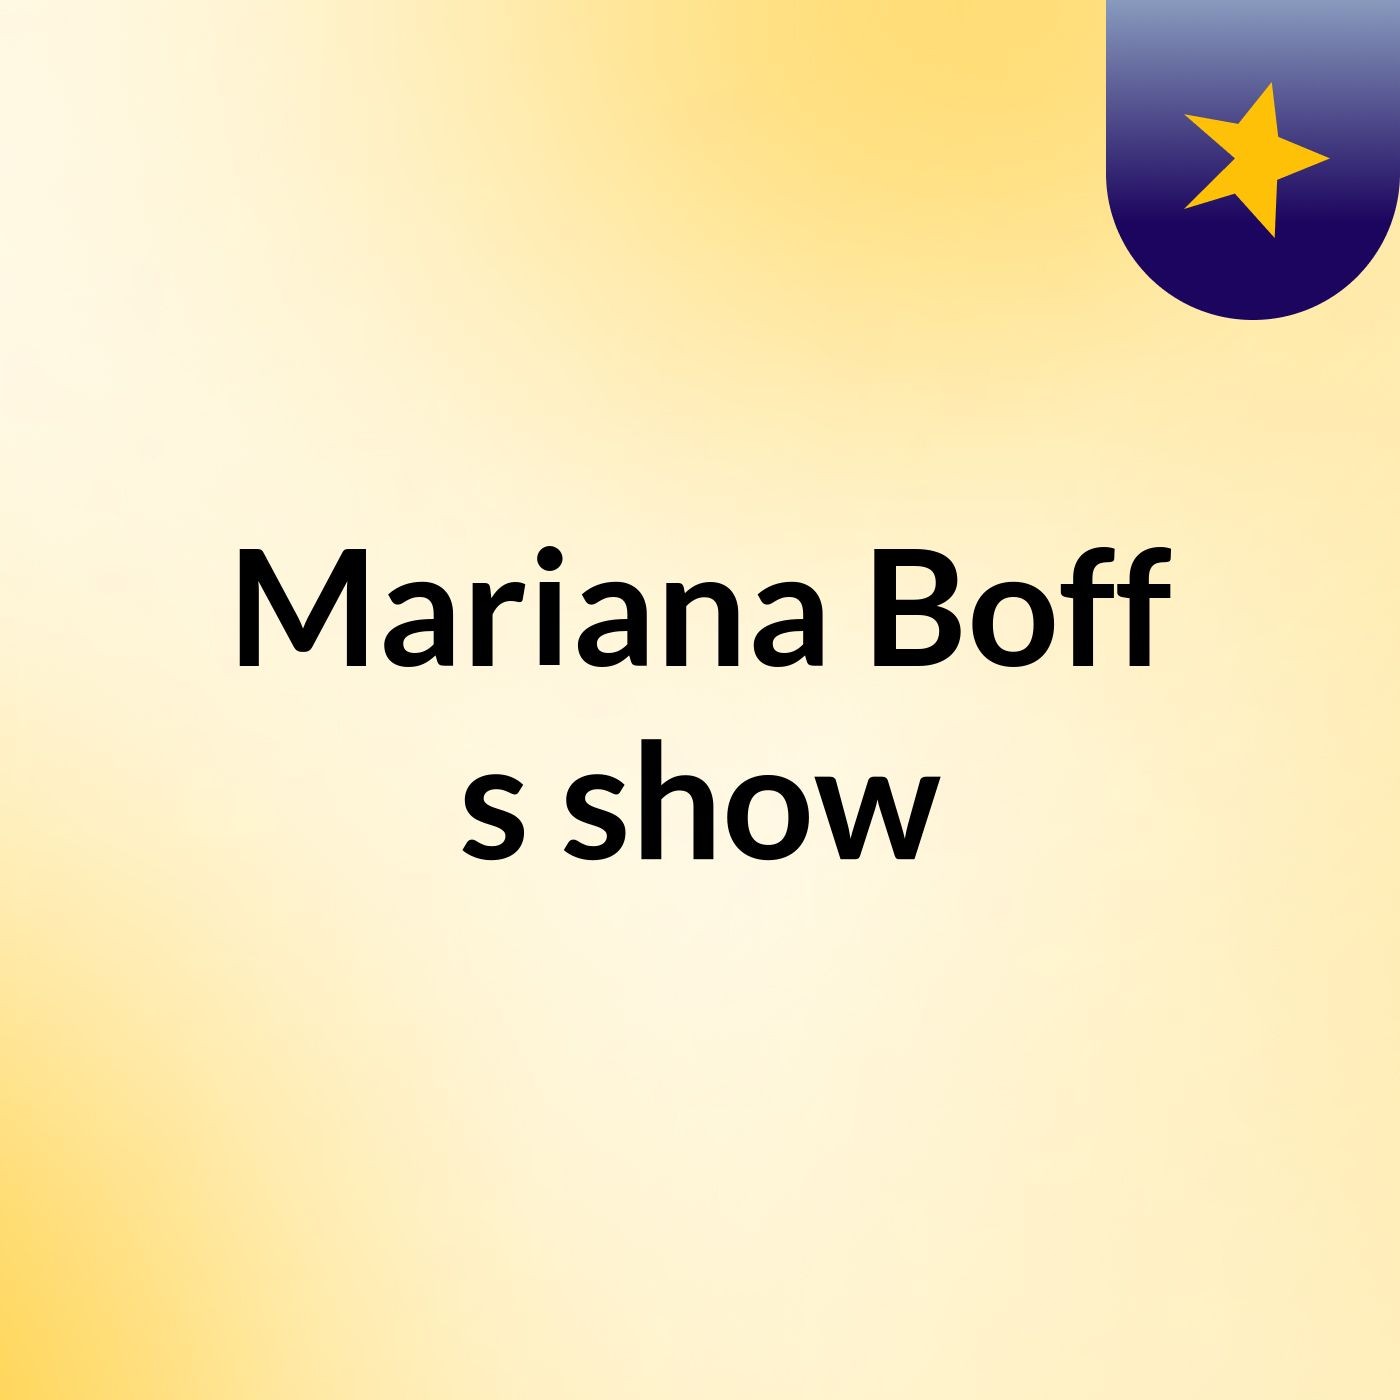 Mariana Boff's show